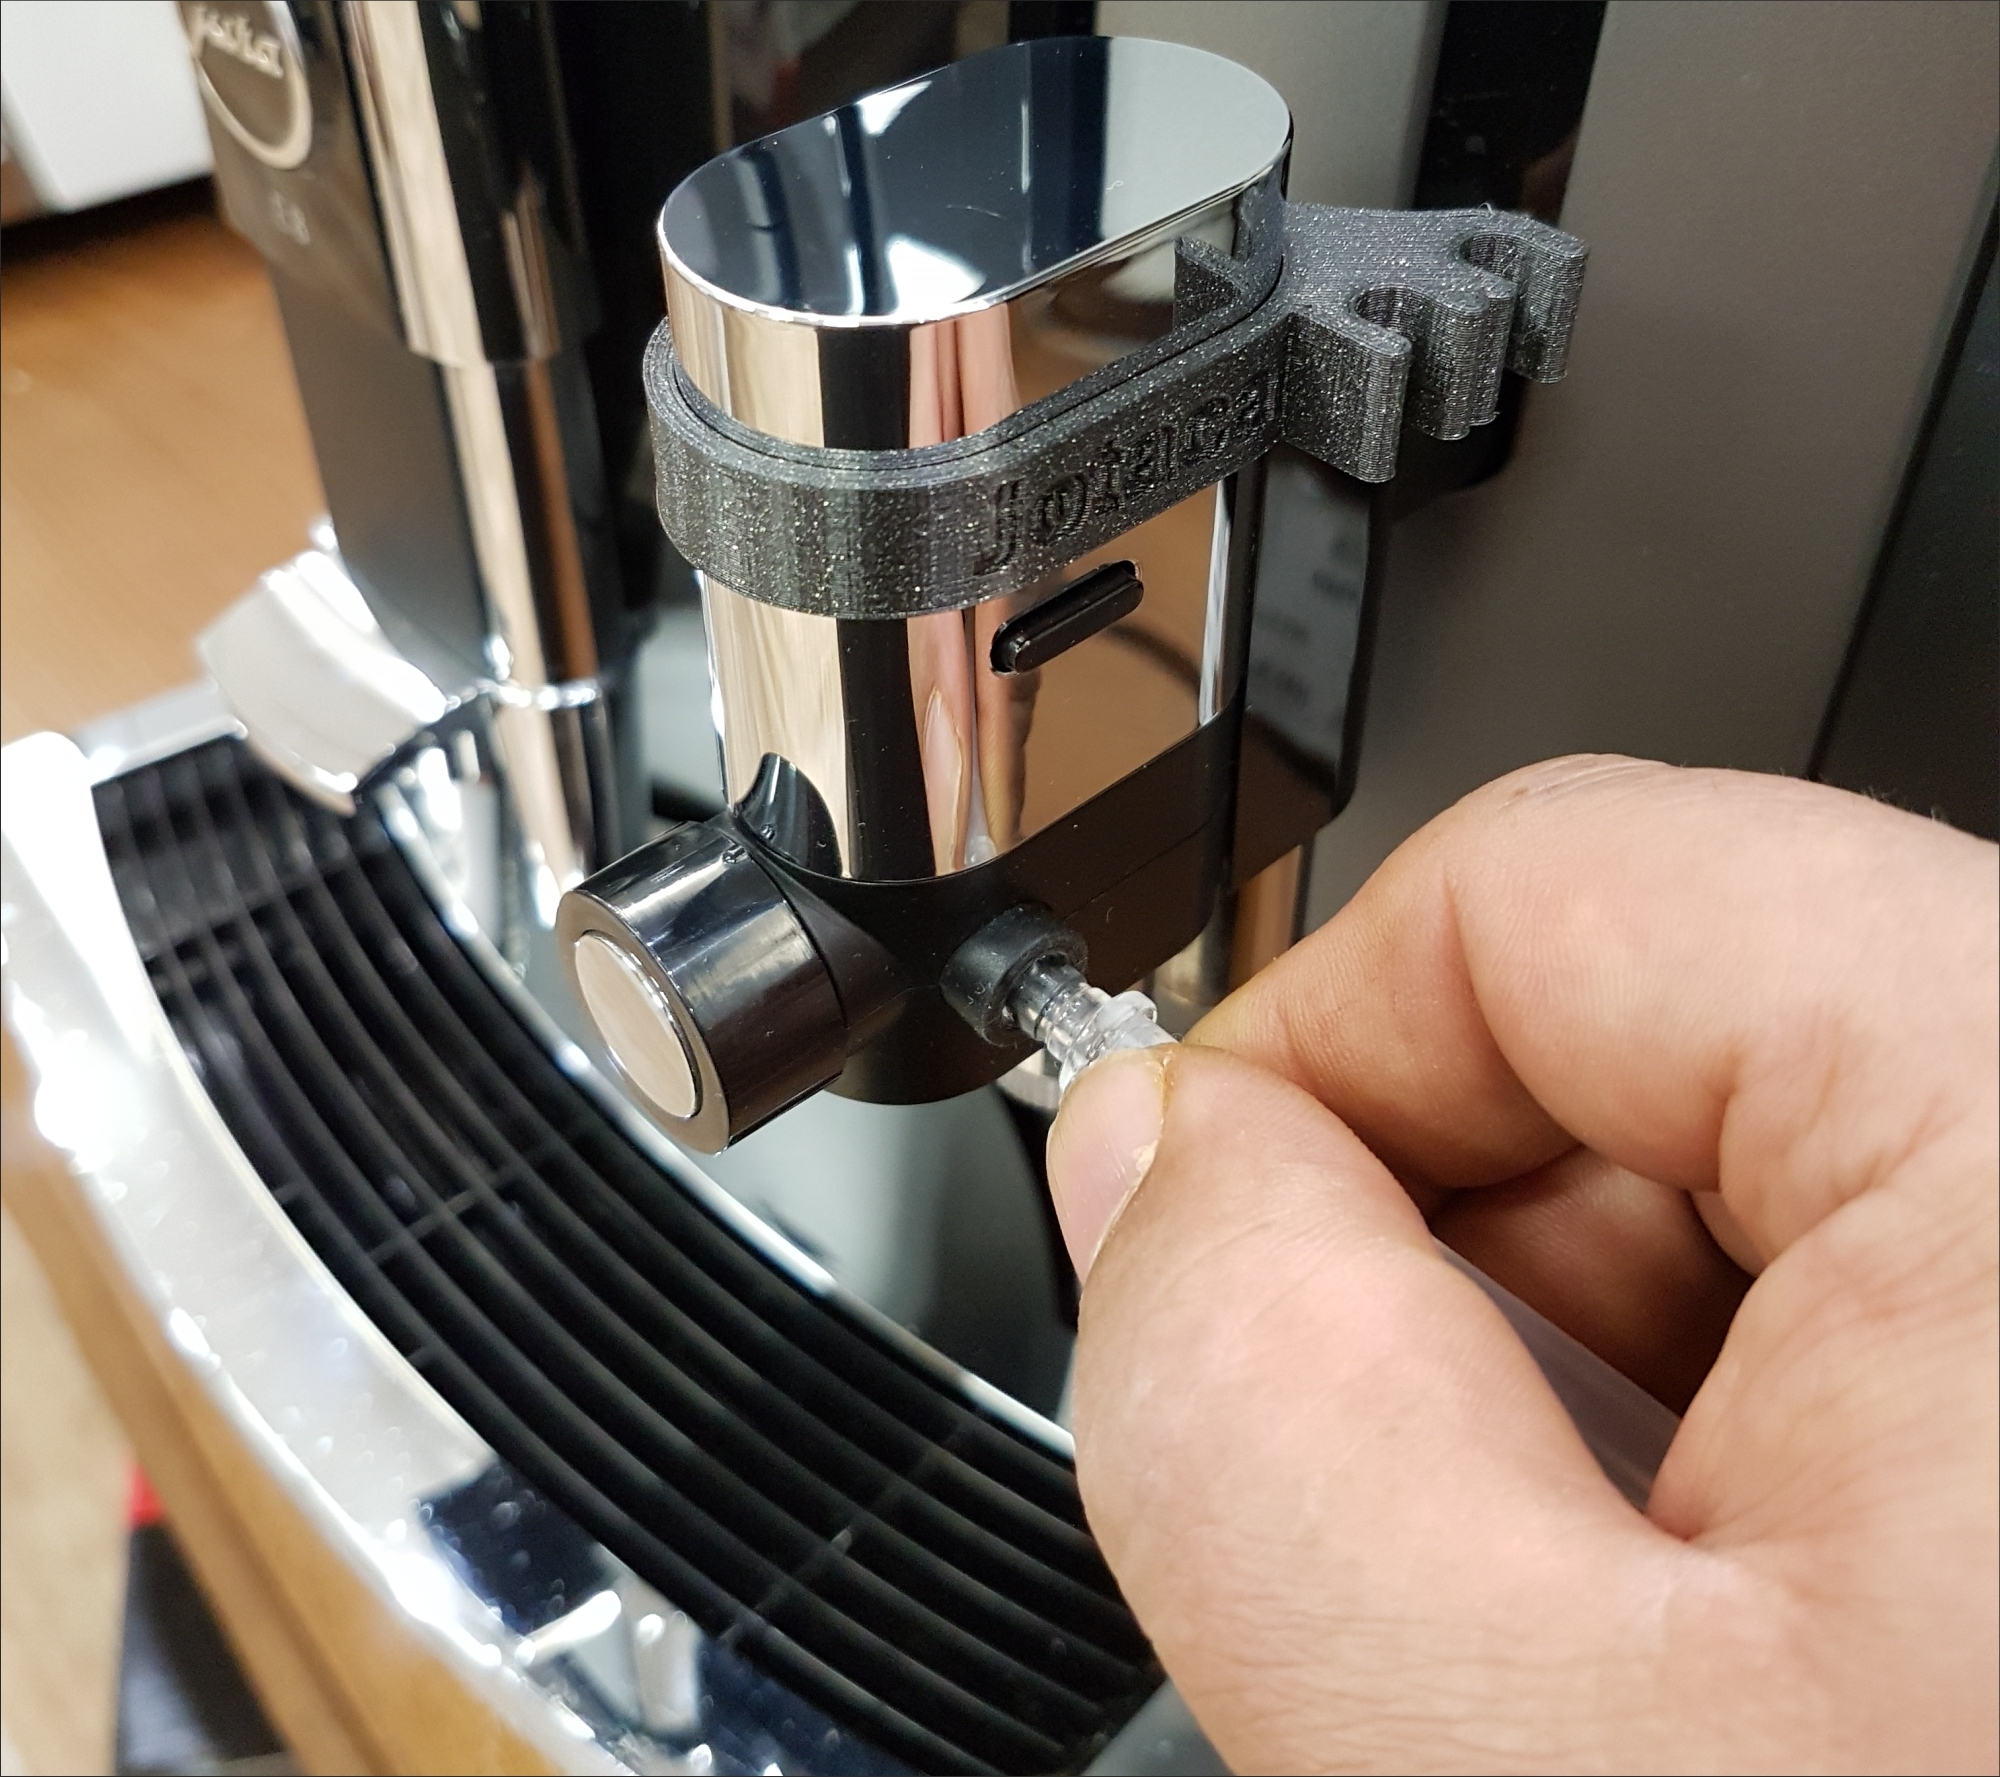 RENZ 3 Haltering Fluid Milchschlauch mit Adapter Nippel I-Form